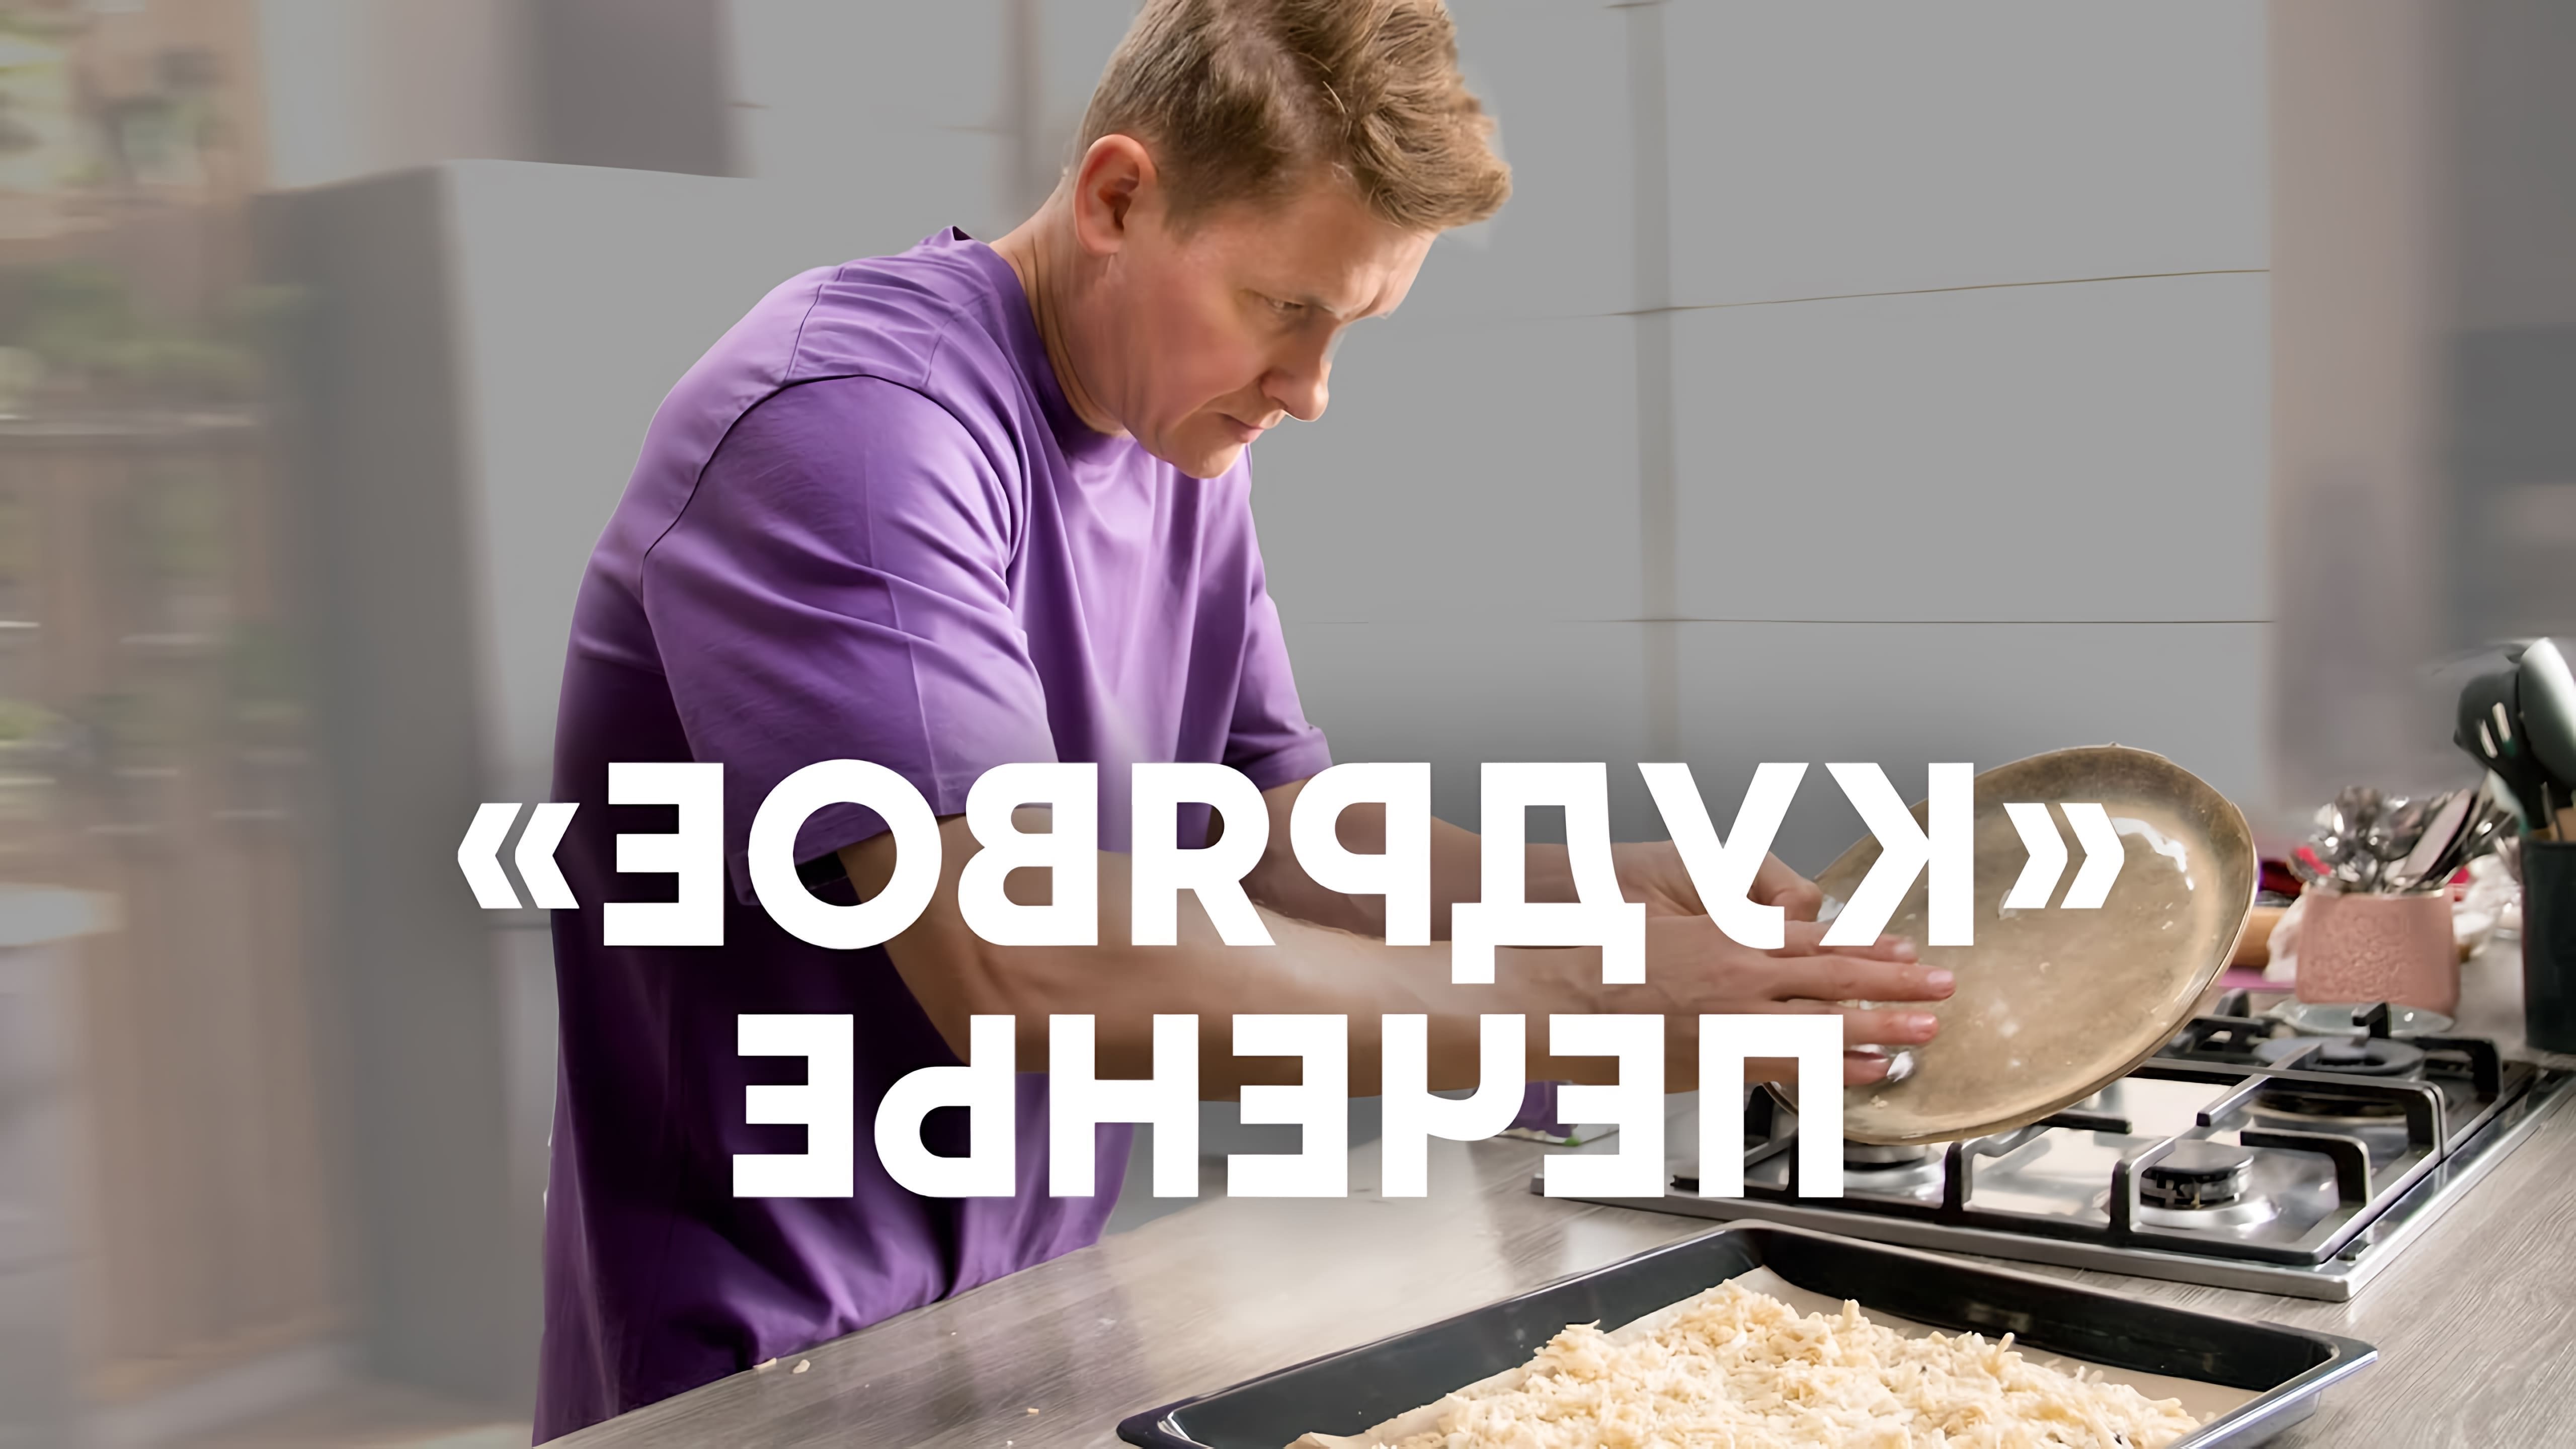 В этом видео шеф-повар Белькович показывает, как приготовить кудрявое печенье с начинкой из джема